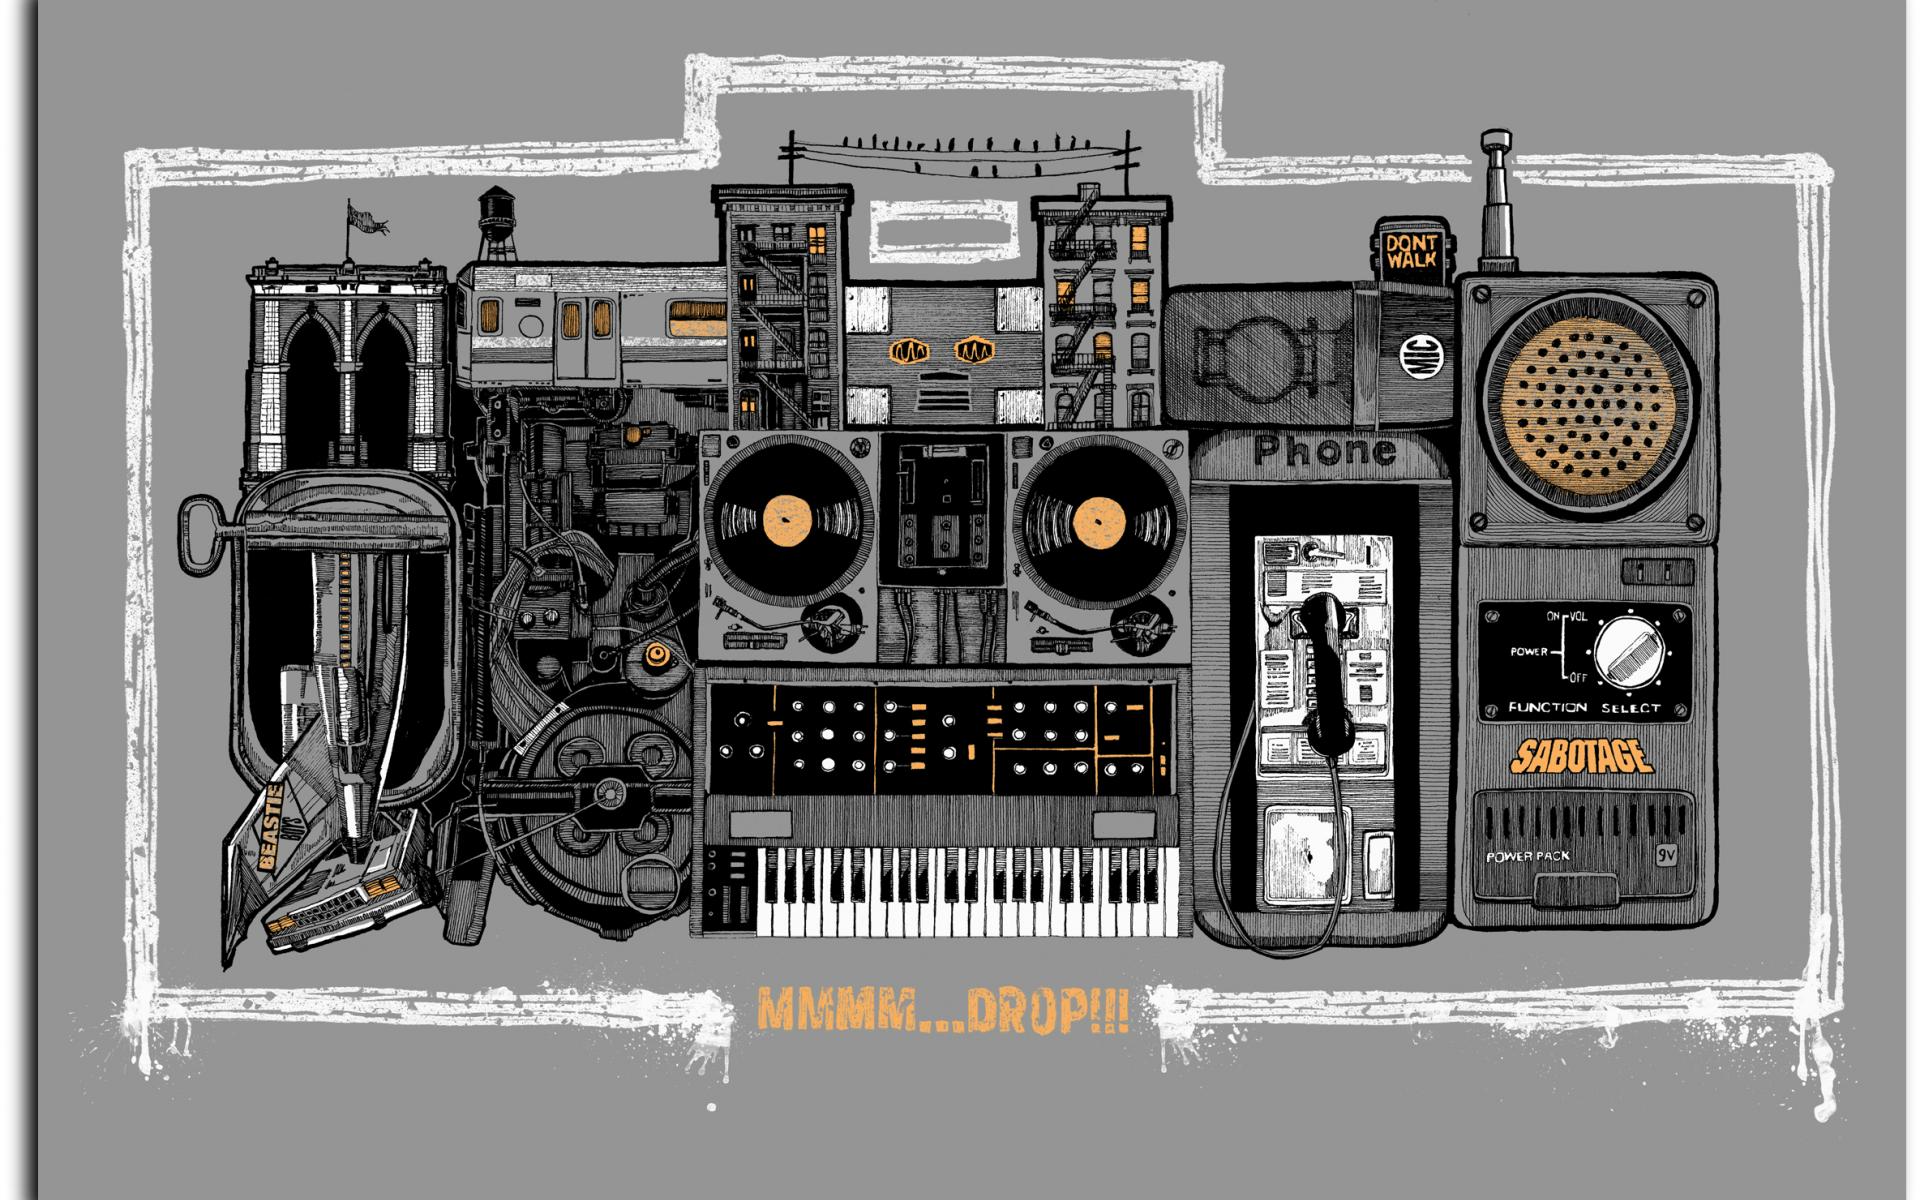 Beastie Boys , HD Wallpaper & Backgrounds